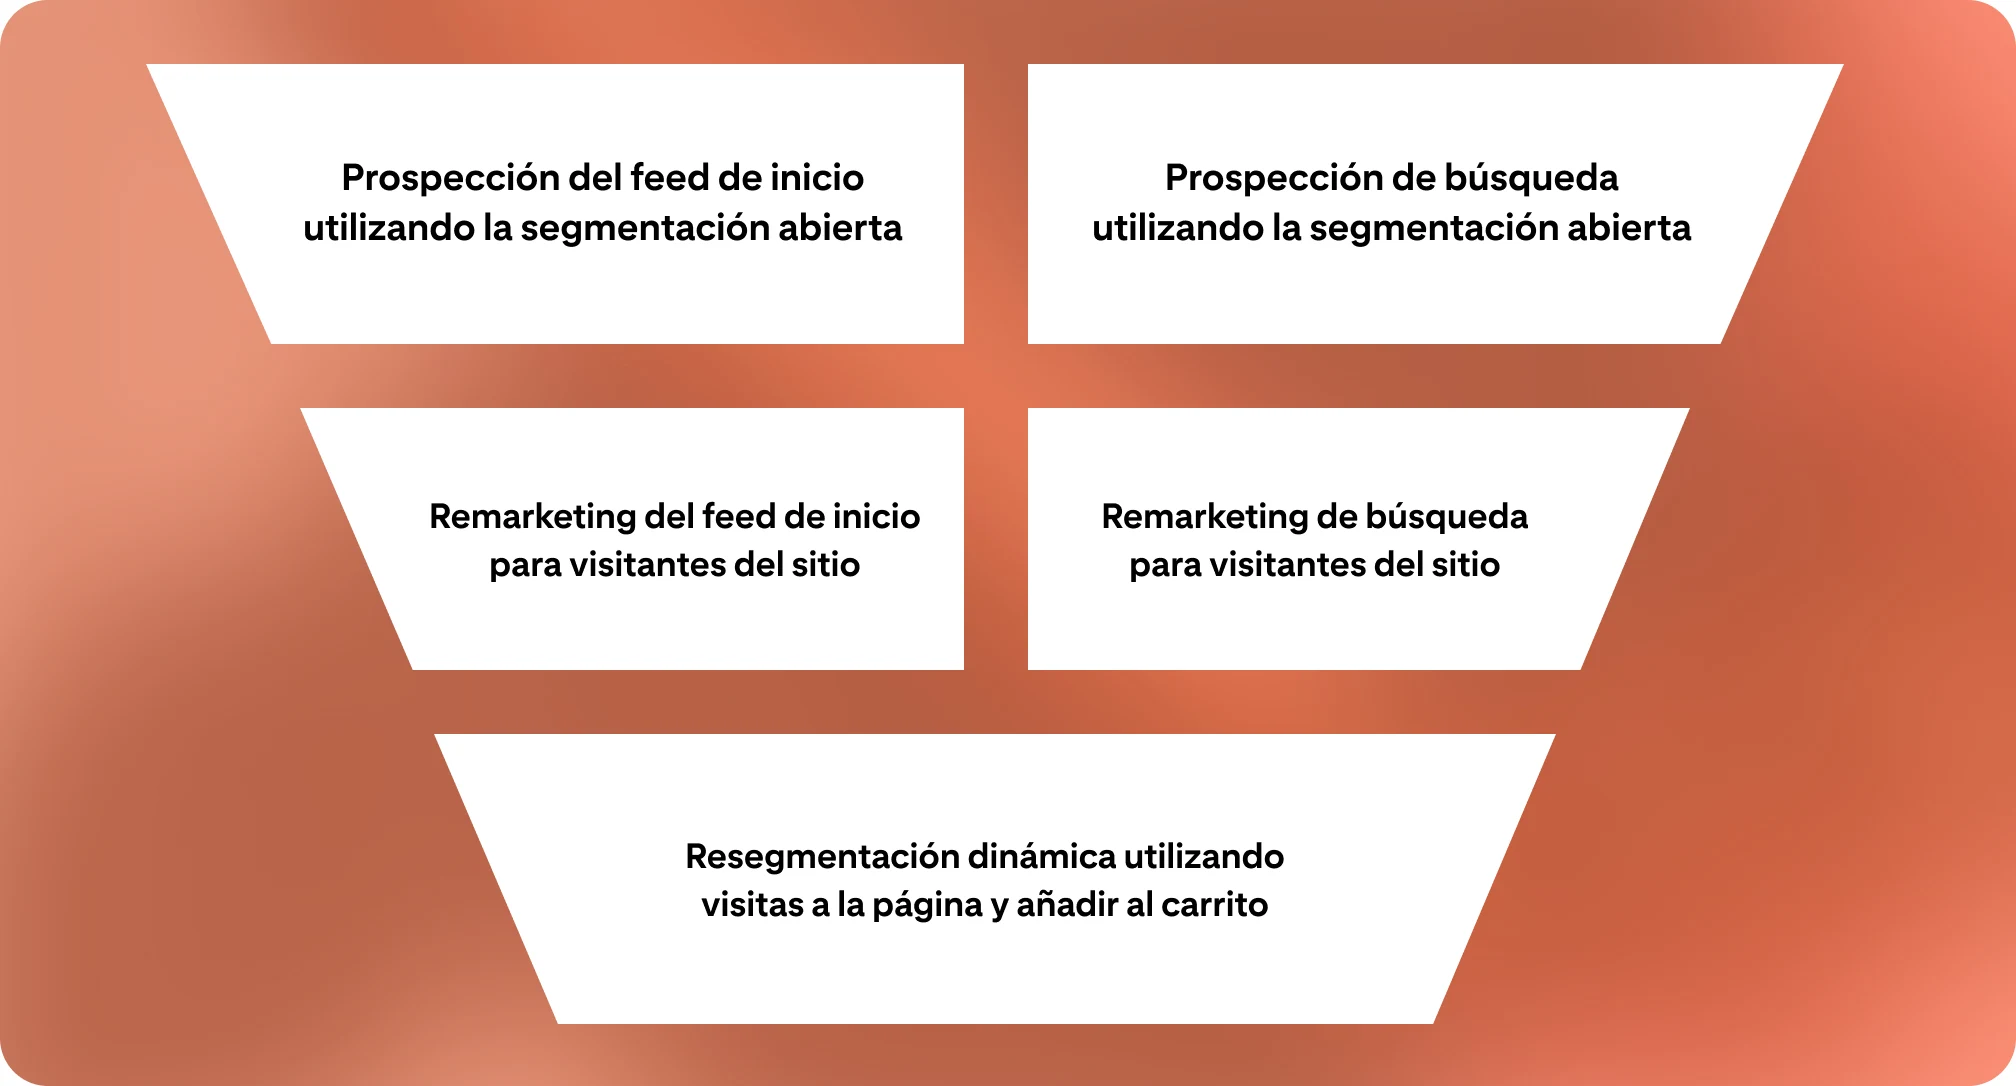 Un funnel de marketing sobre un fondo de color naranja, divido en cinco partes. Cada una representa una campaña de publicidad diferente.